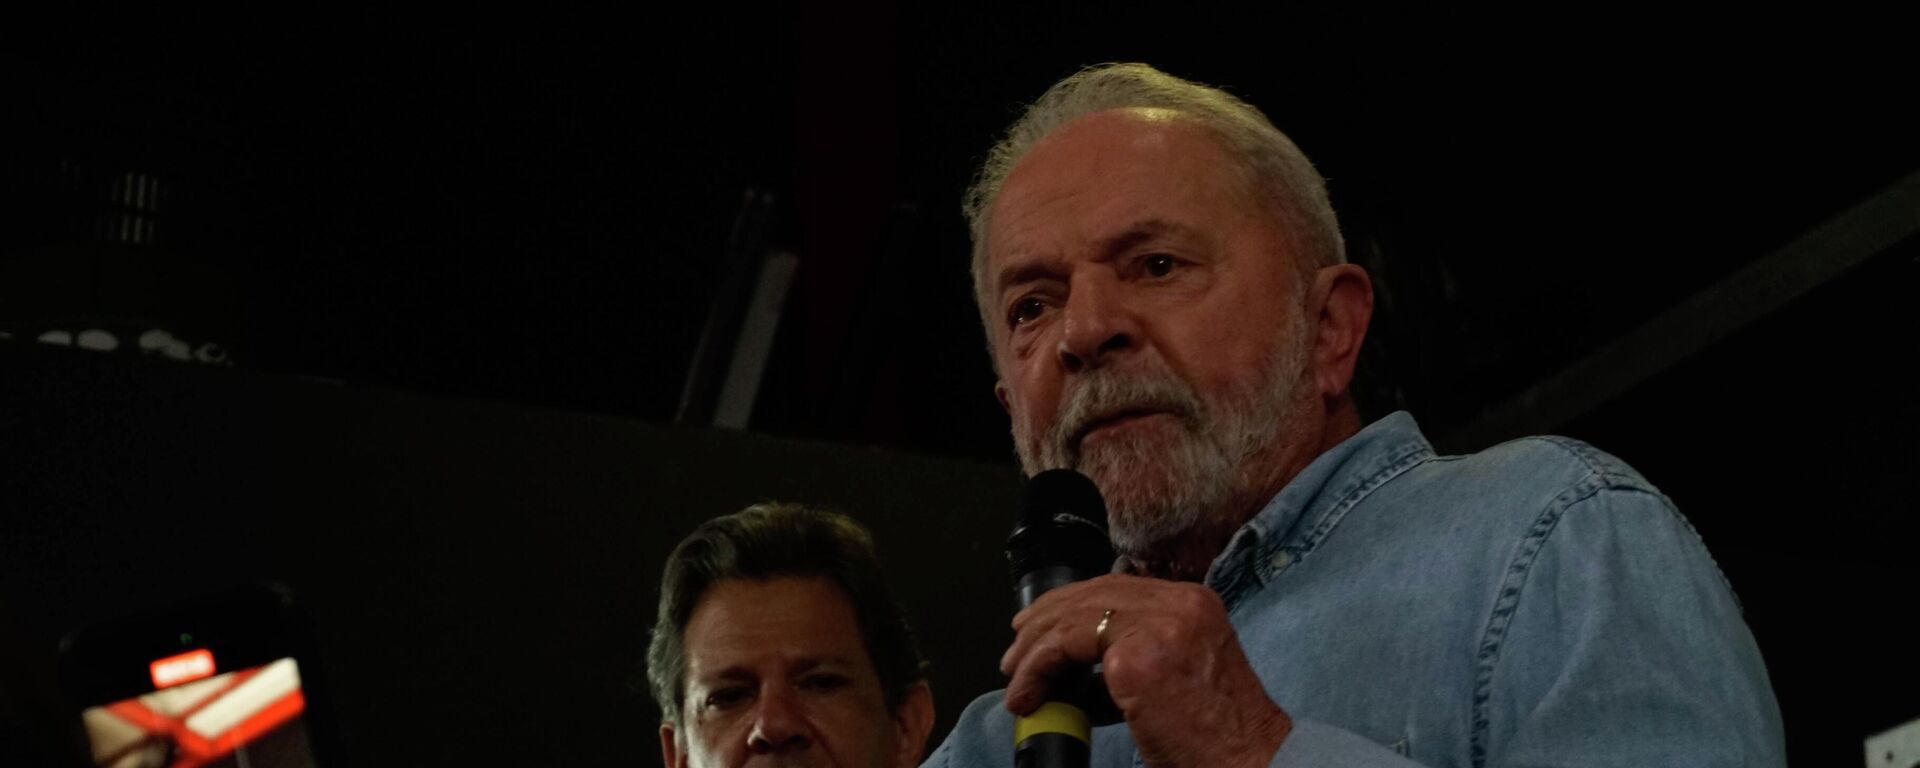 Luiz Inácio Lula da Silva (PT) discursa em São Paulo em ato no último dia da campanha presidencial de 2022 (foto de arquivo) - Sputnik Brasil, 1920, 09.11.2022